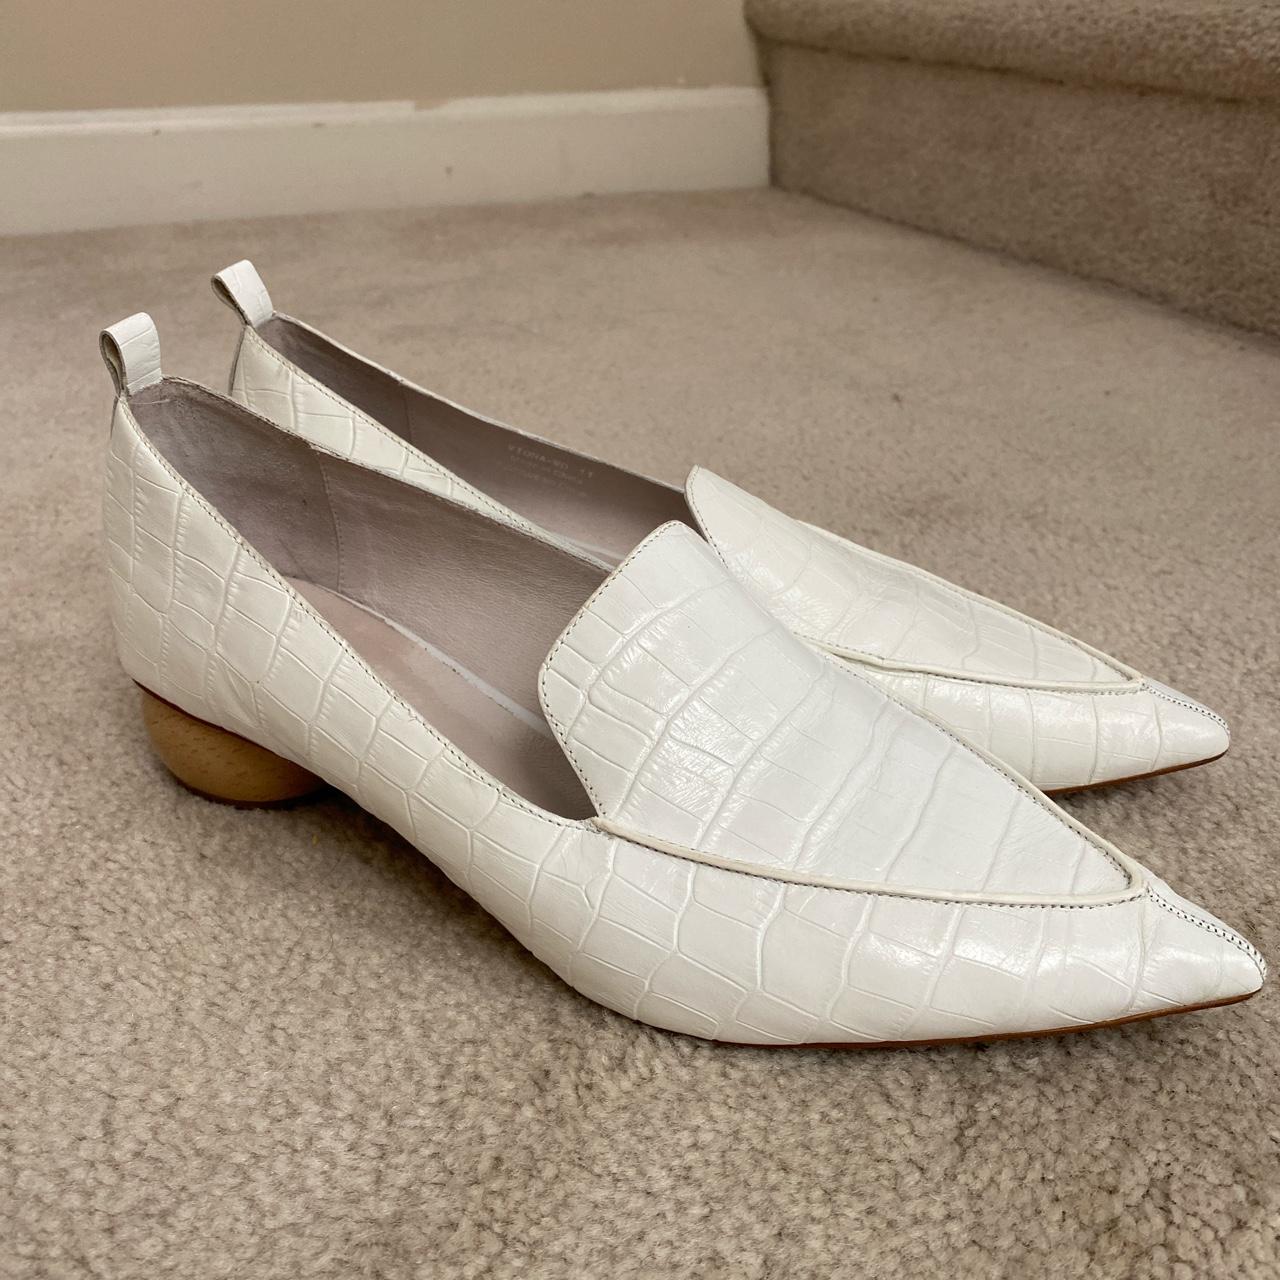 Jeffrey Campbell vintage loafers. Such an elegant,... - Depop